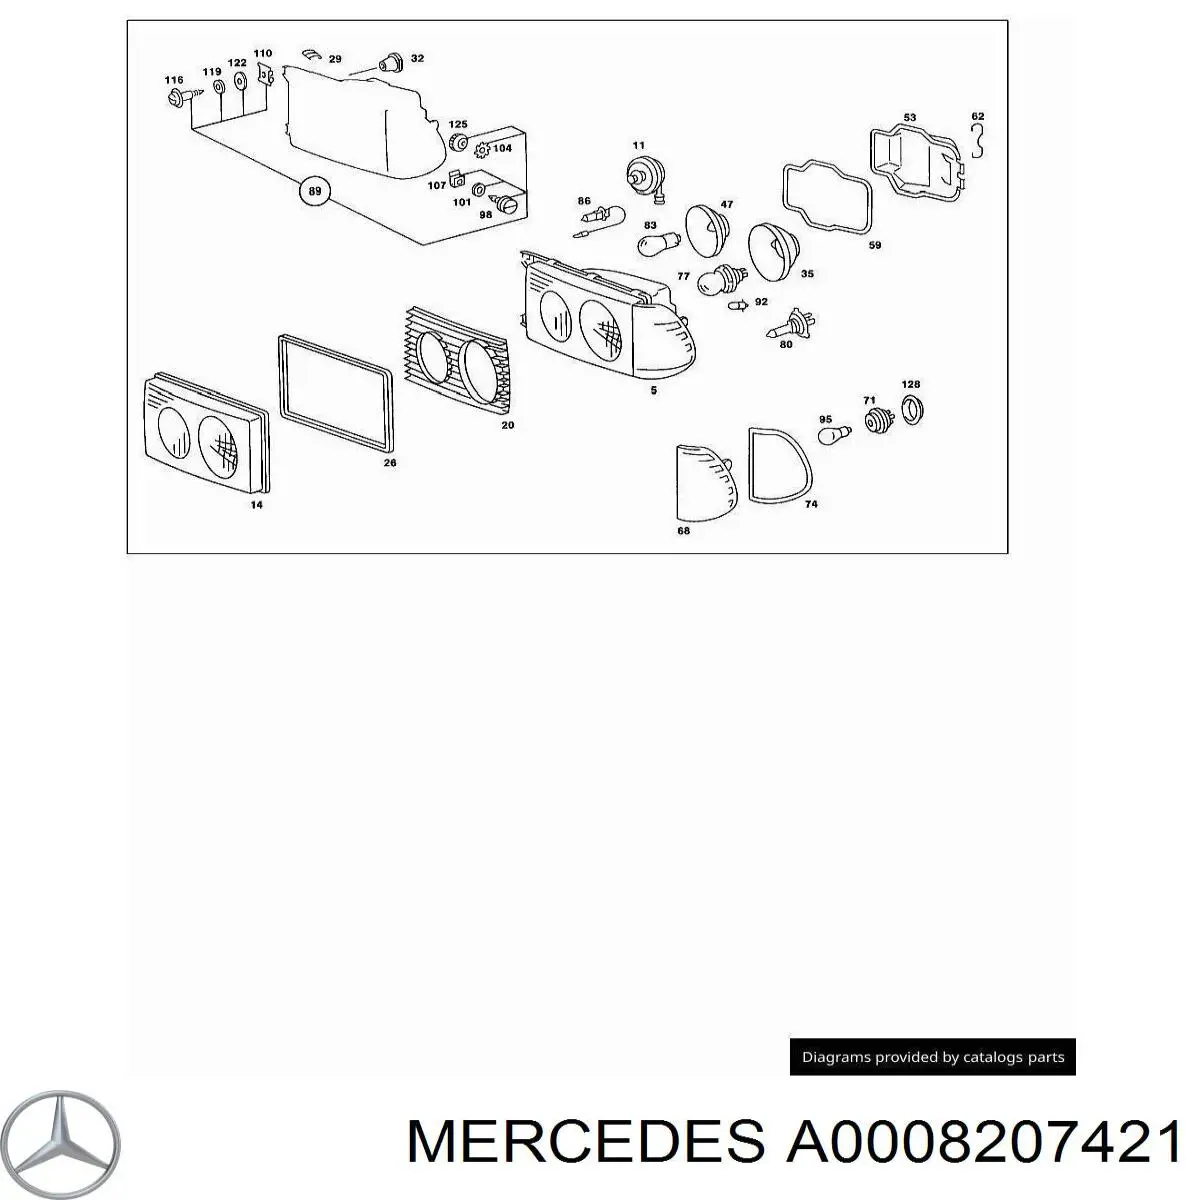 Intermitente derecho Mercedes E W123